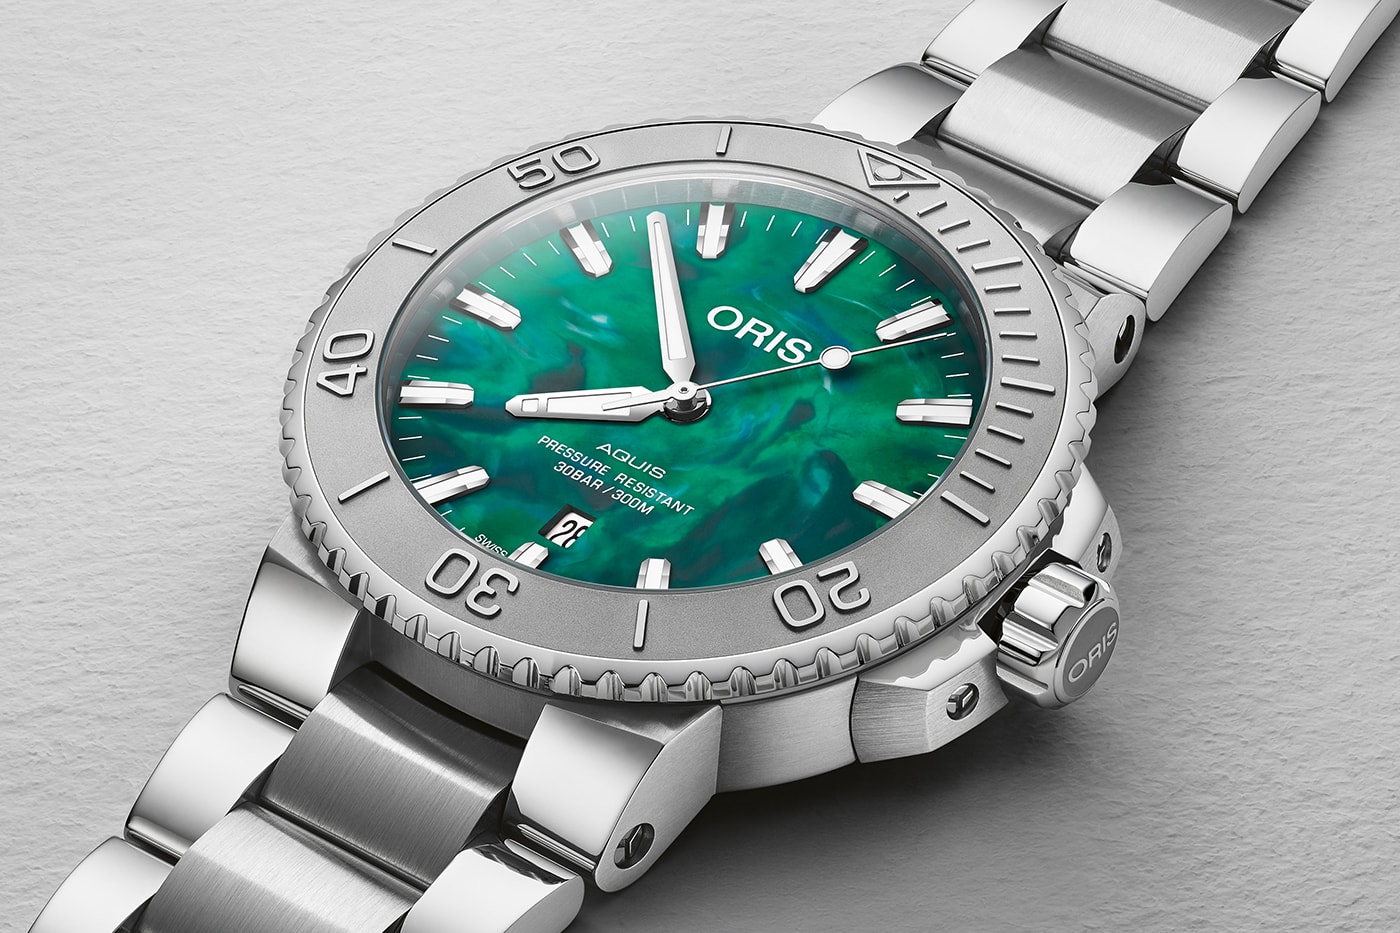 Oris AquisPRO 4000m Oris X Bracenet Artelier S Geneva Watch Days Release Info